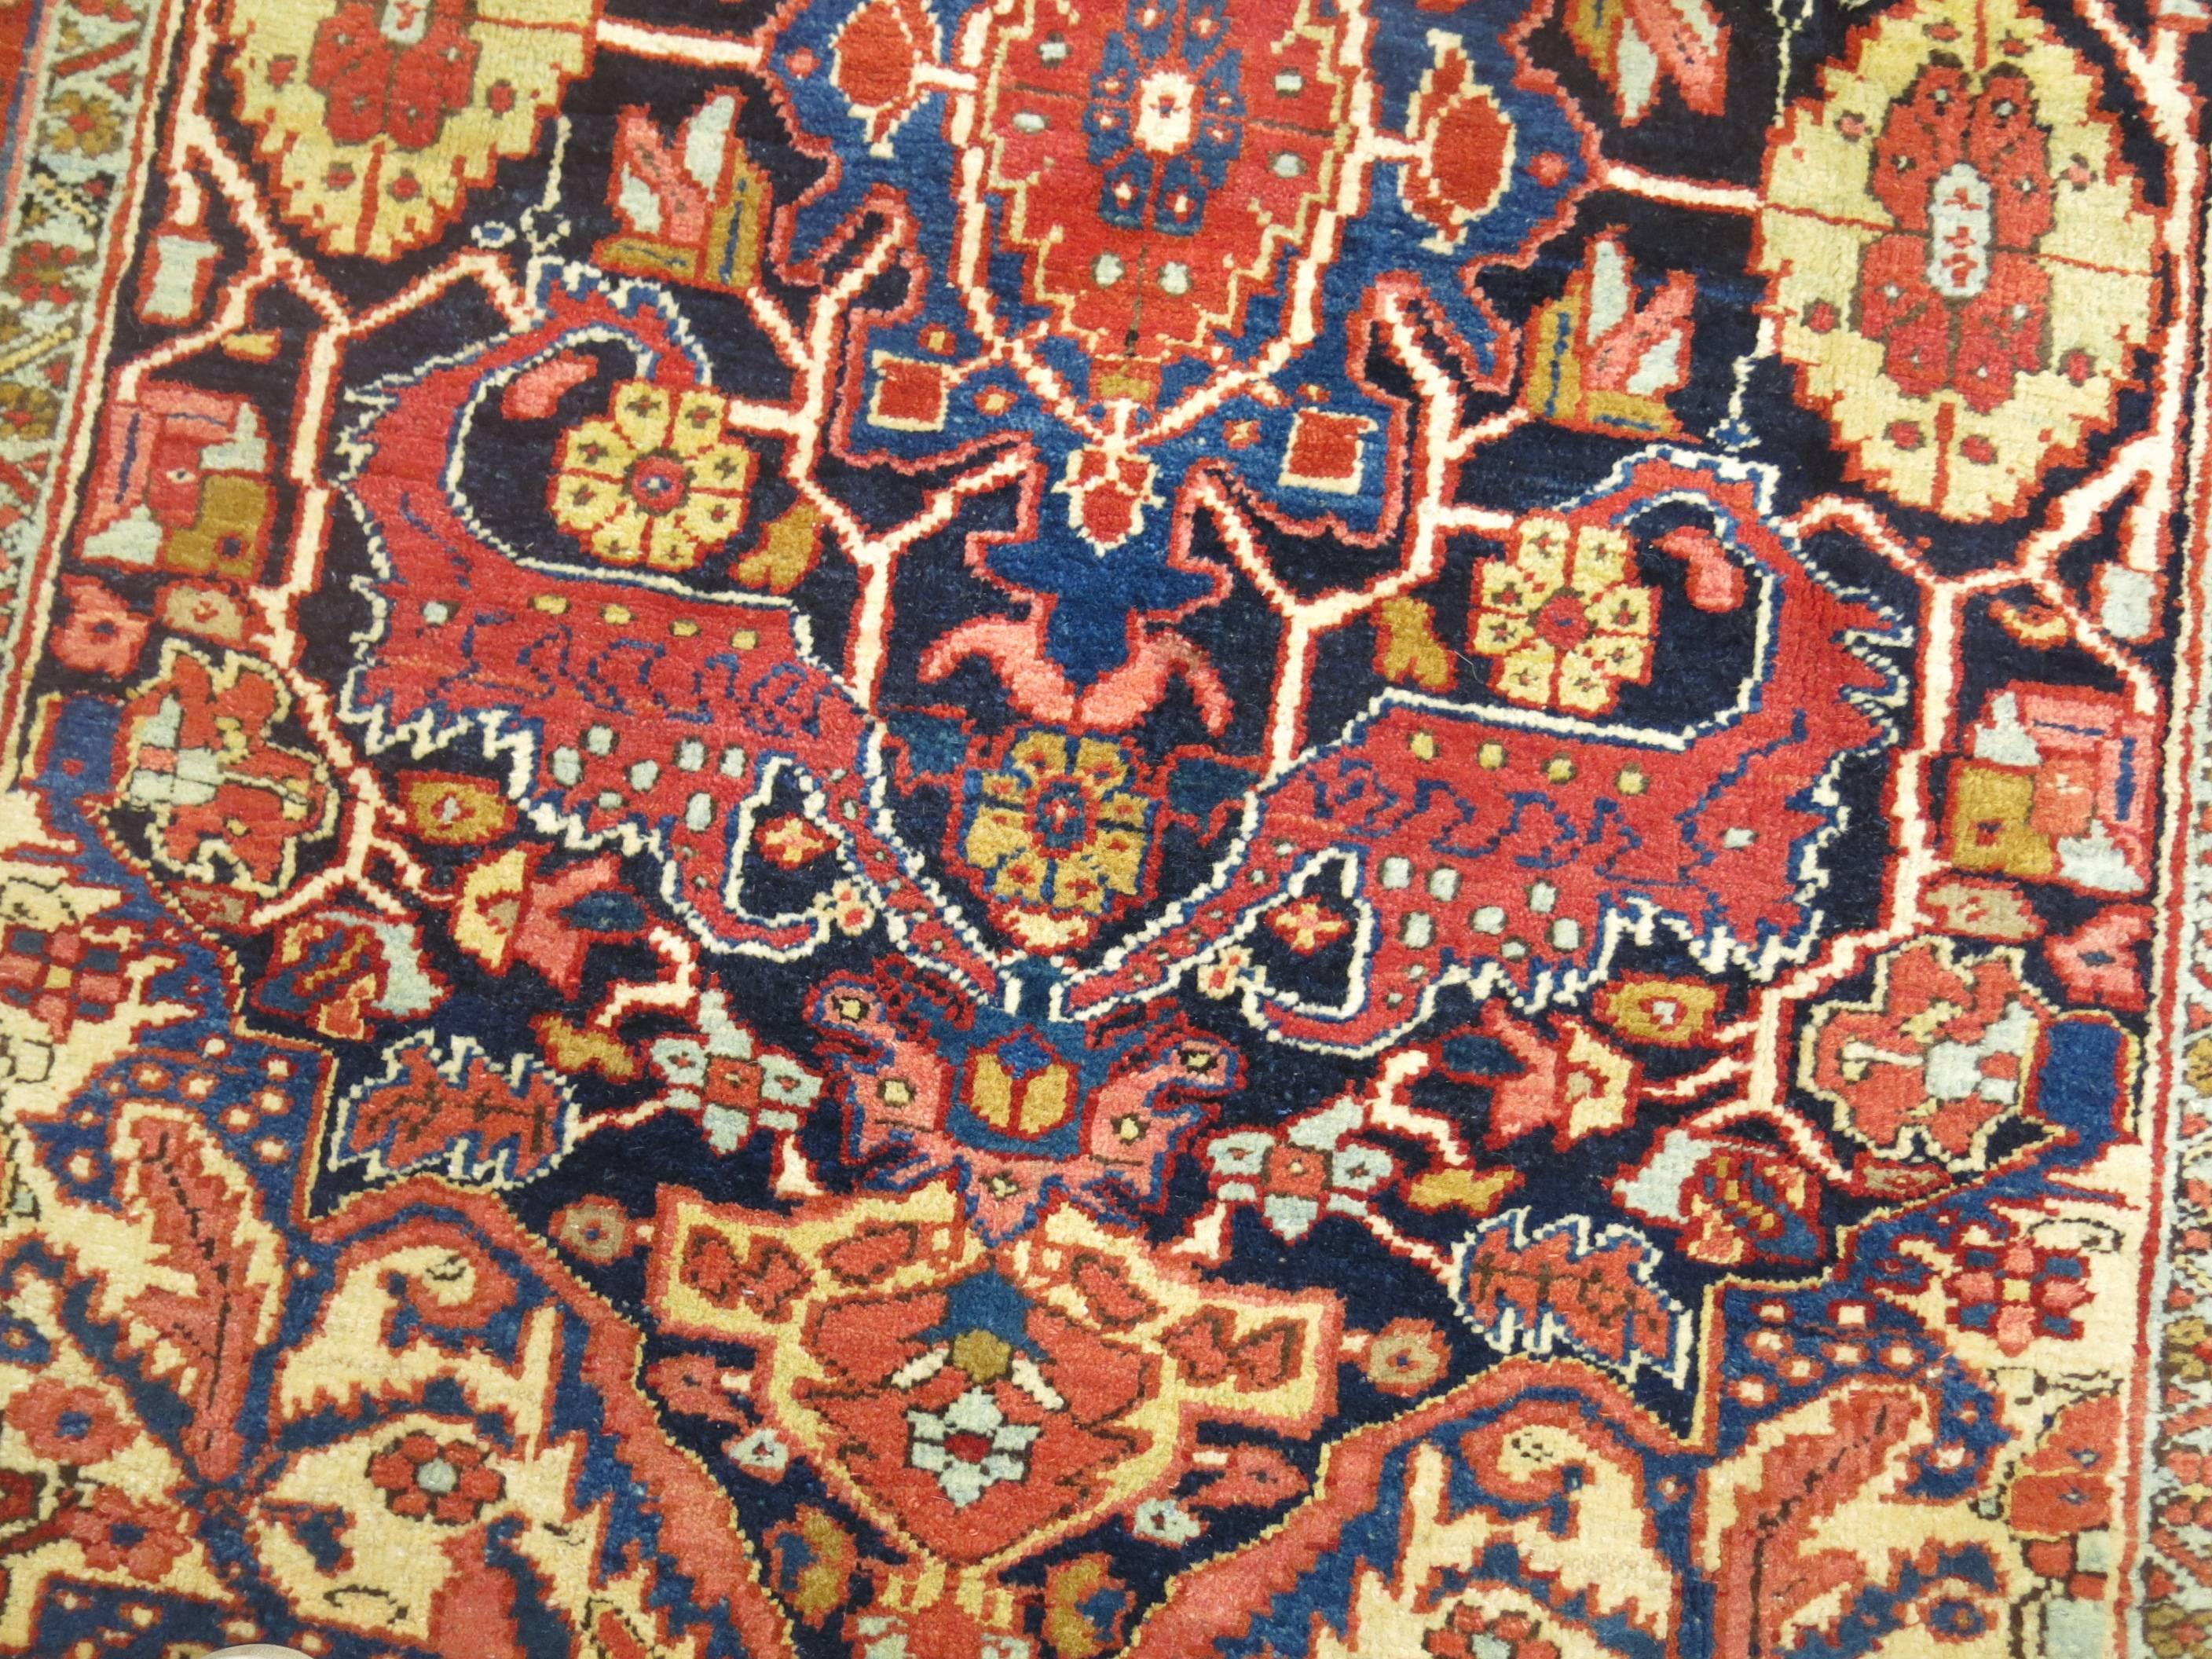 Ein authentischer vollfloriger persischer Heriz-Teppich. Die Palette ist formal, die Umrandung hat einen orangeroten Farbton, während das Feld marineblau ist. 

Maße: 4'7